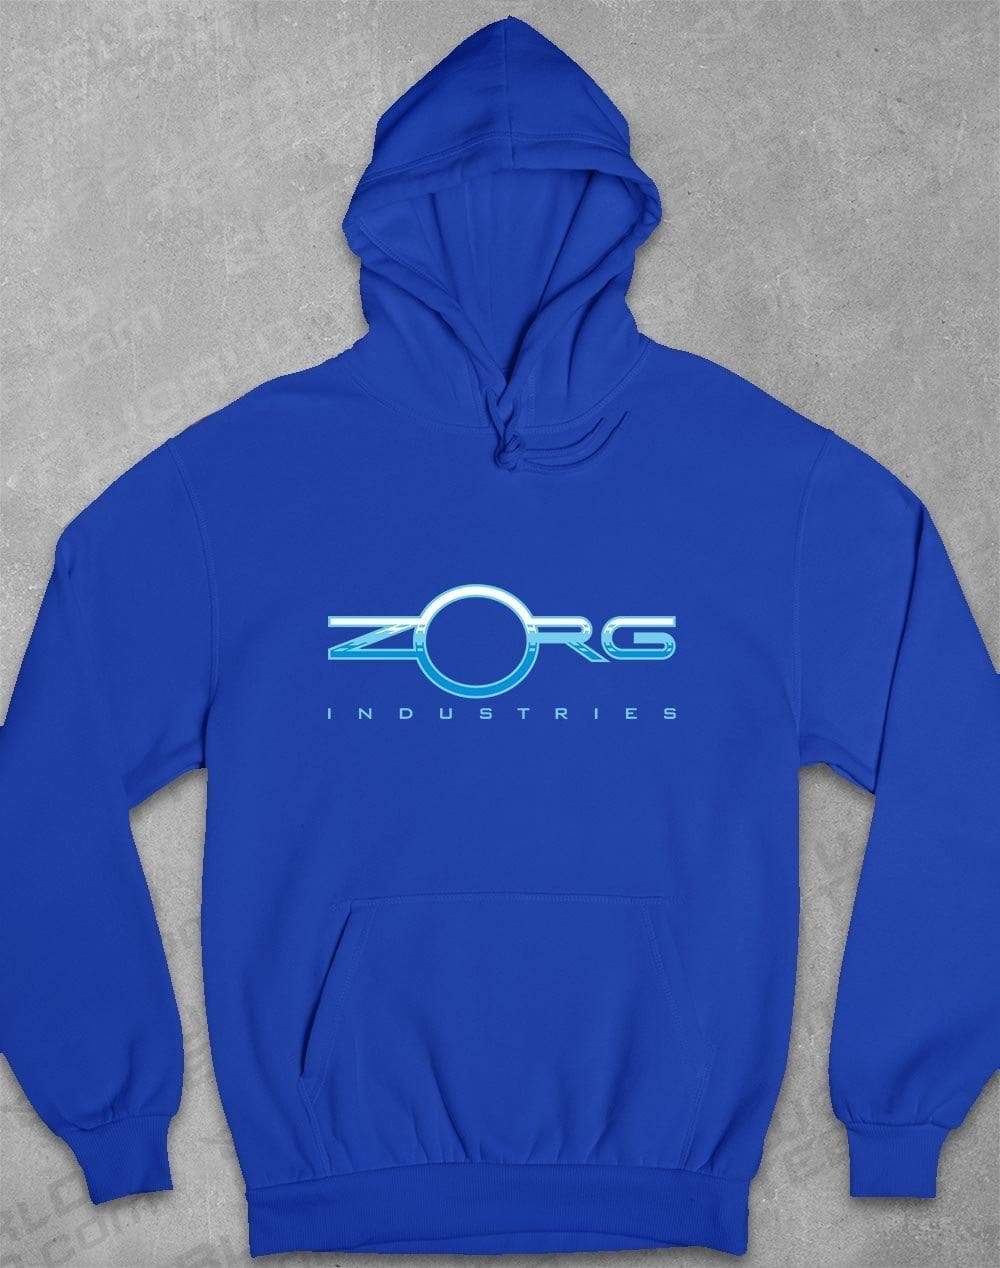 Zorg Industries Hoodie S / Royal Blue  - Off World Tees